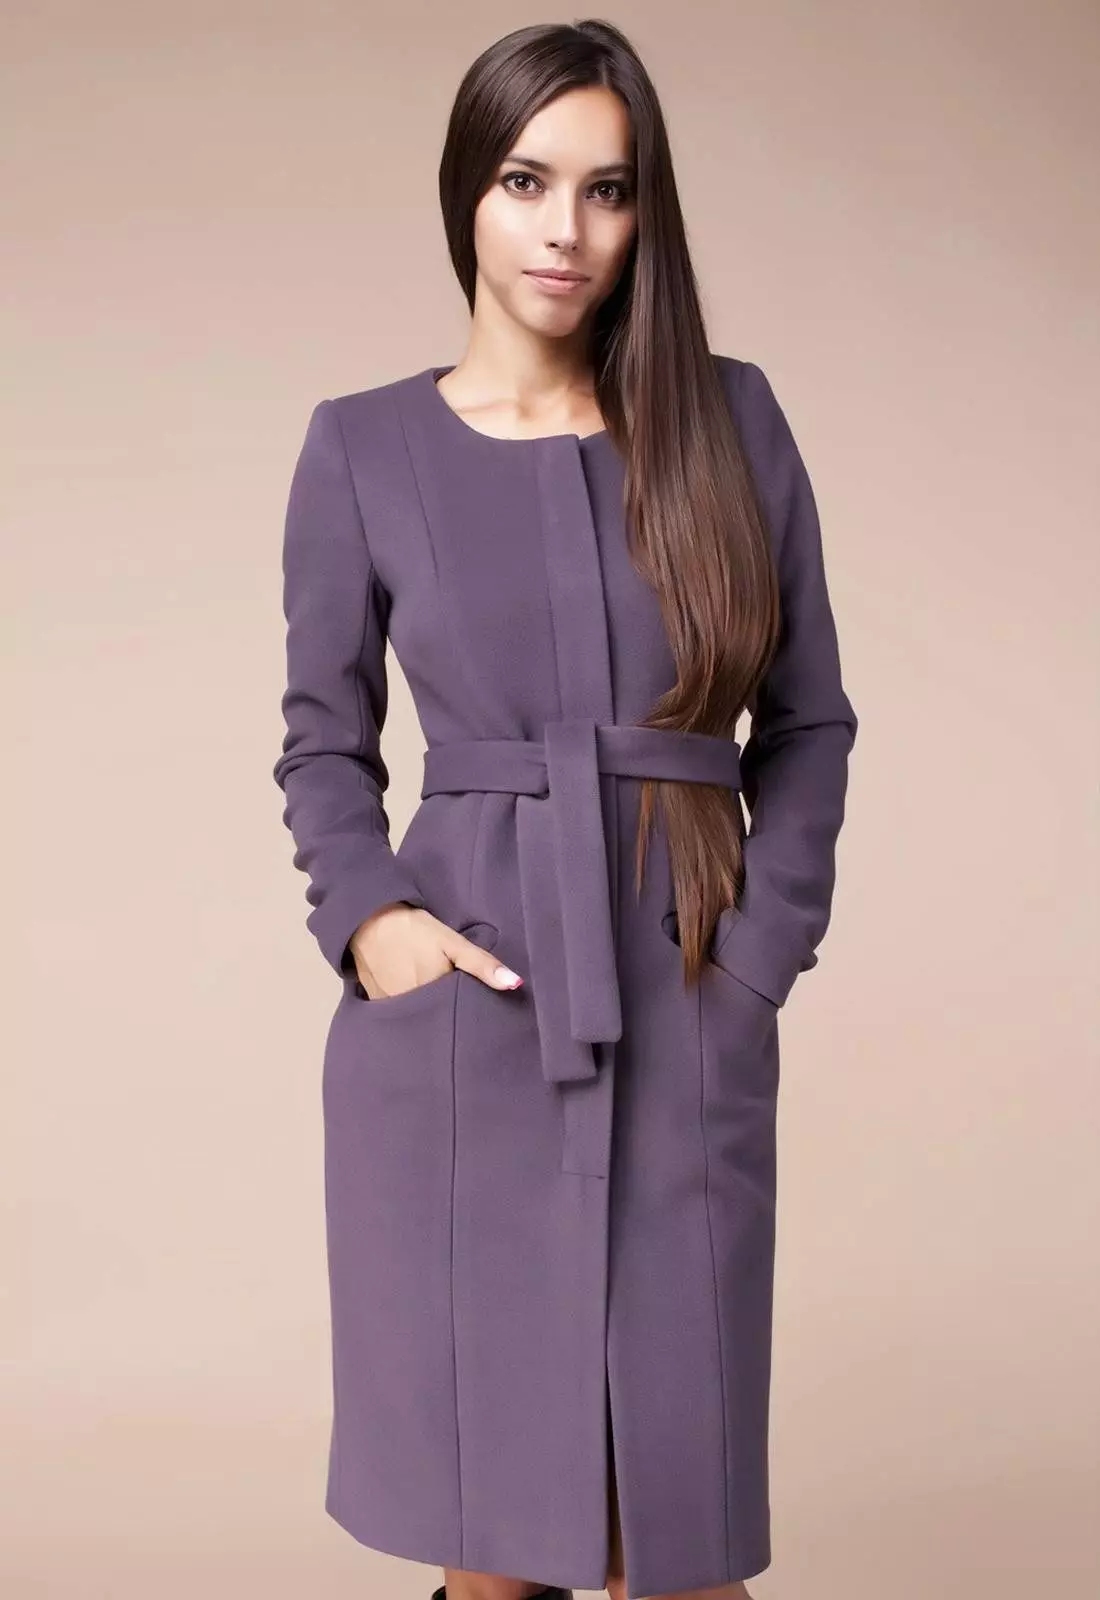 Female frakke Spring 2021 (356 Billeder): Fra russiske producenter, modeller, stilarter og stilarter, quiltet, kort, dæmpning, læder 623_180